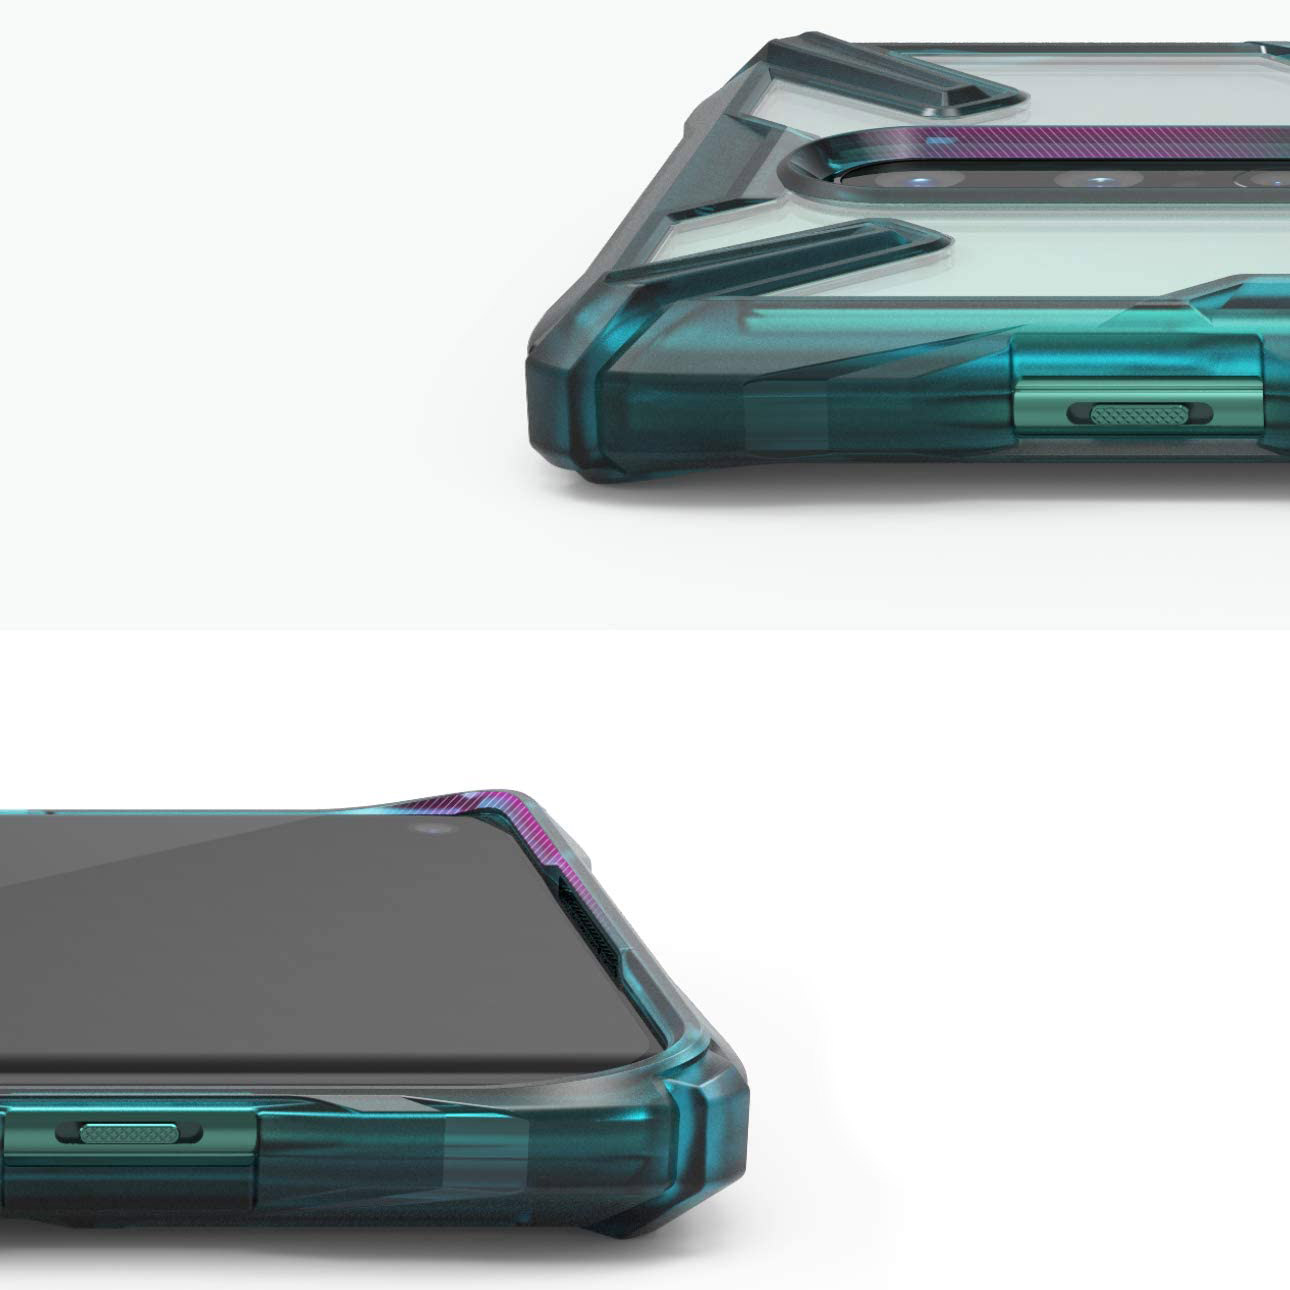 Schutzhülle Rearth Ringke Fusion X für OnePlus 8, transparent mit dem türkisen Rahmen